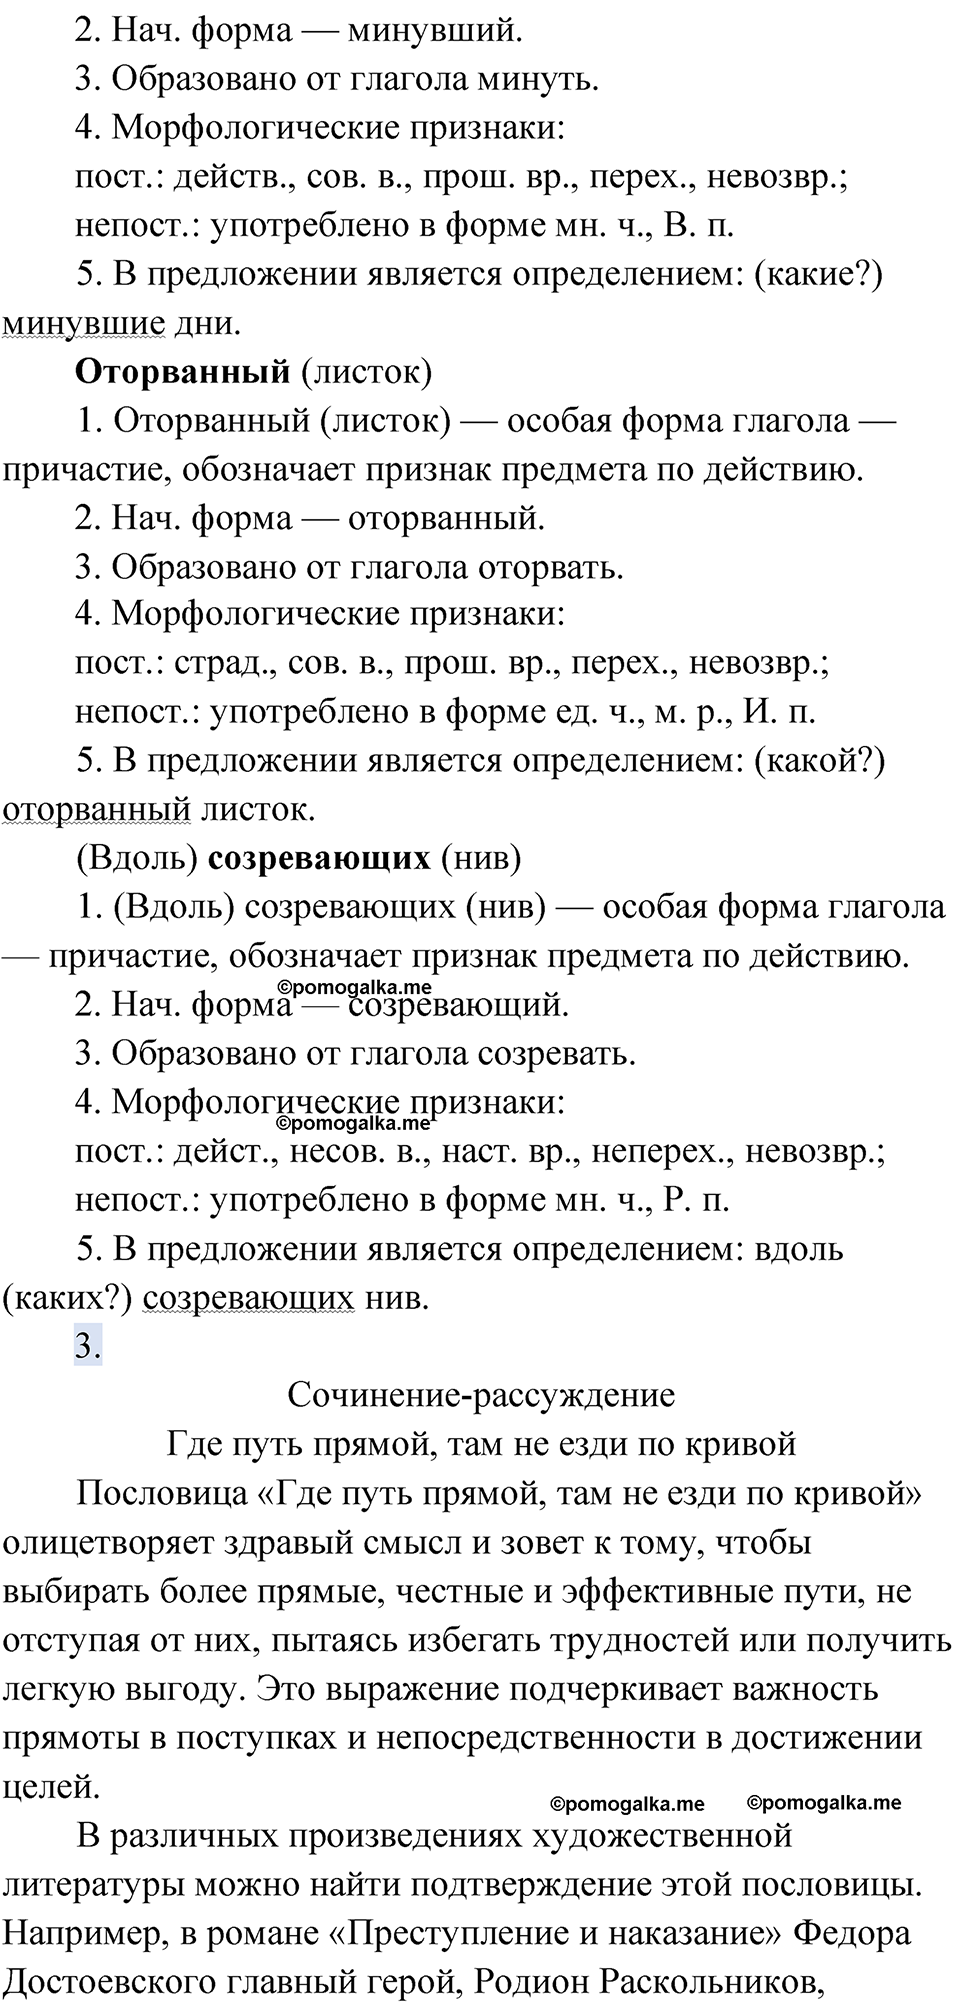 страница 229 упражнение 195 русский язык 9 класс Быстрова 1 часть 2022 год